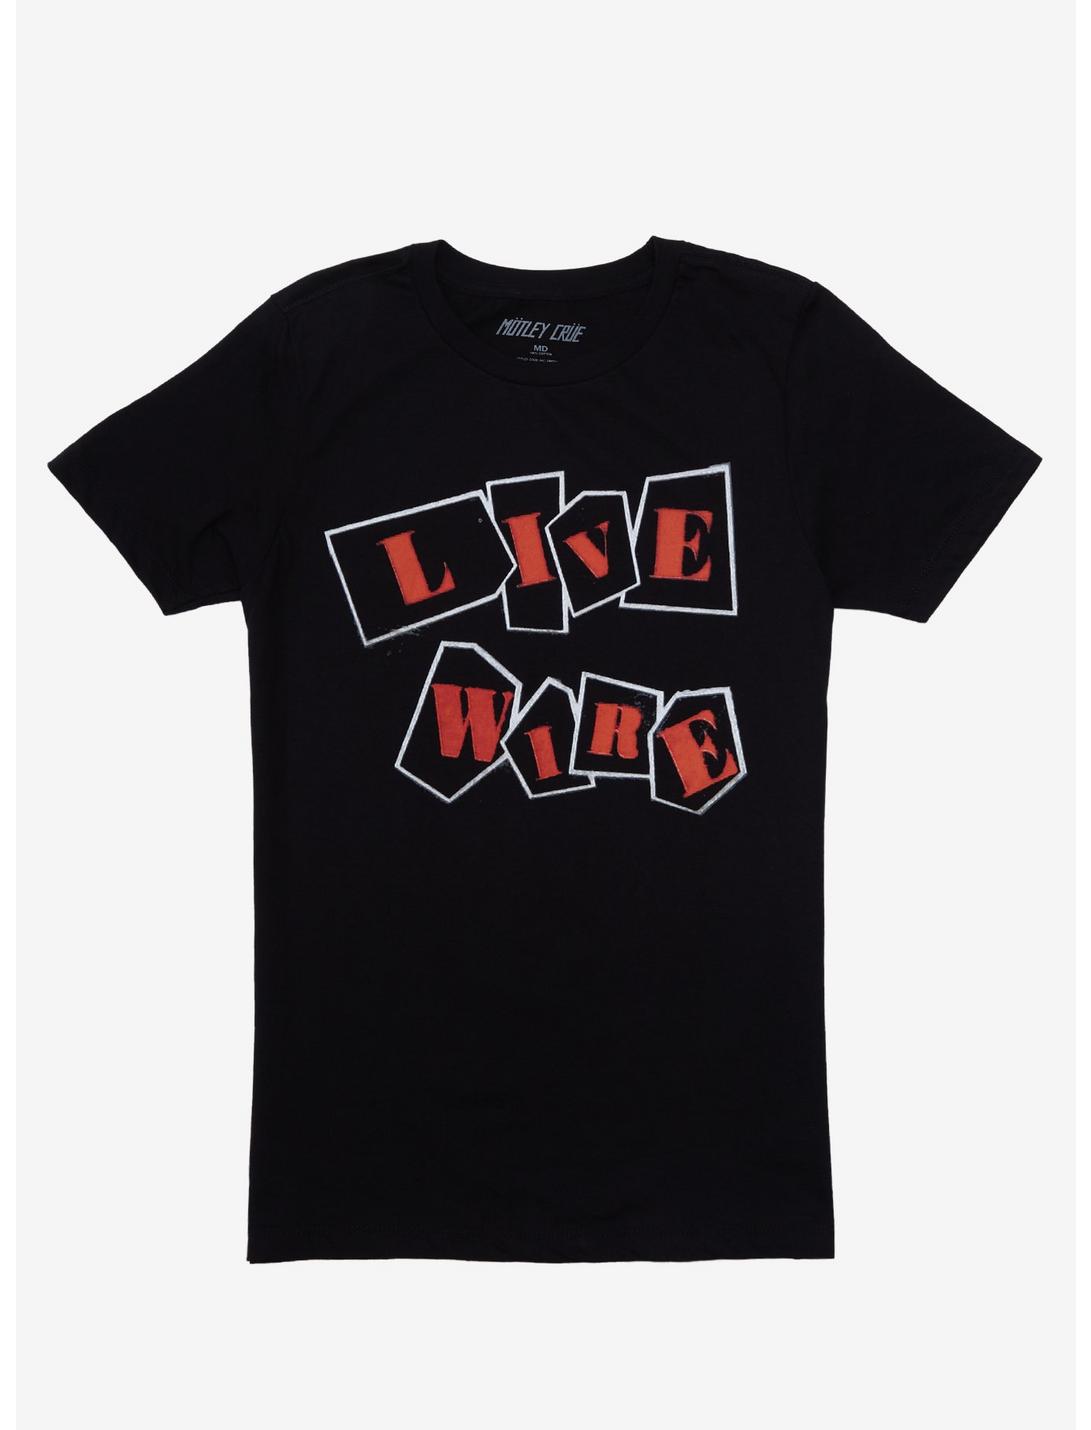 Motley Crue Live Wire Girls T-Shirt, BLACK, hi-res